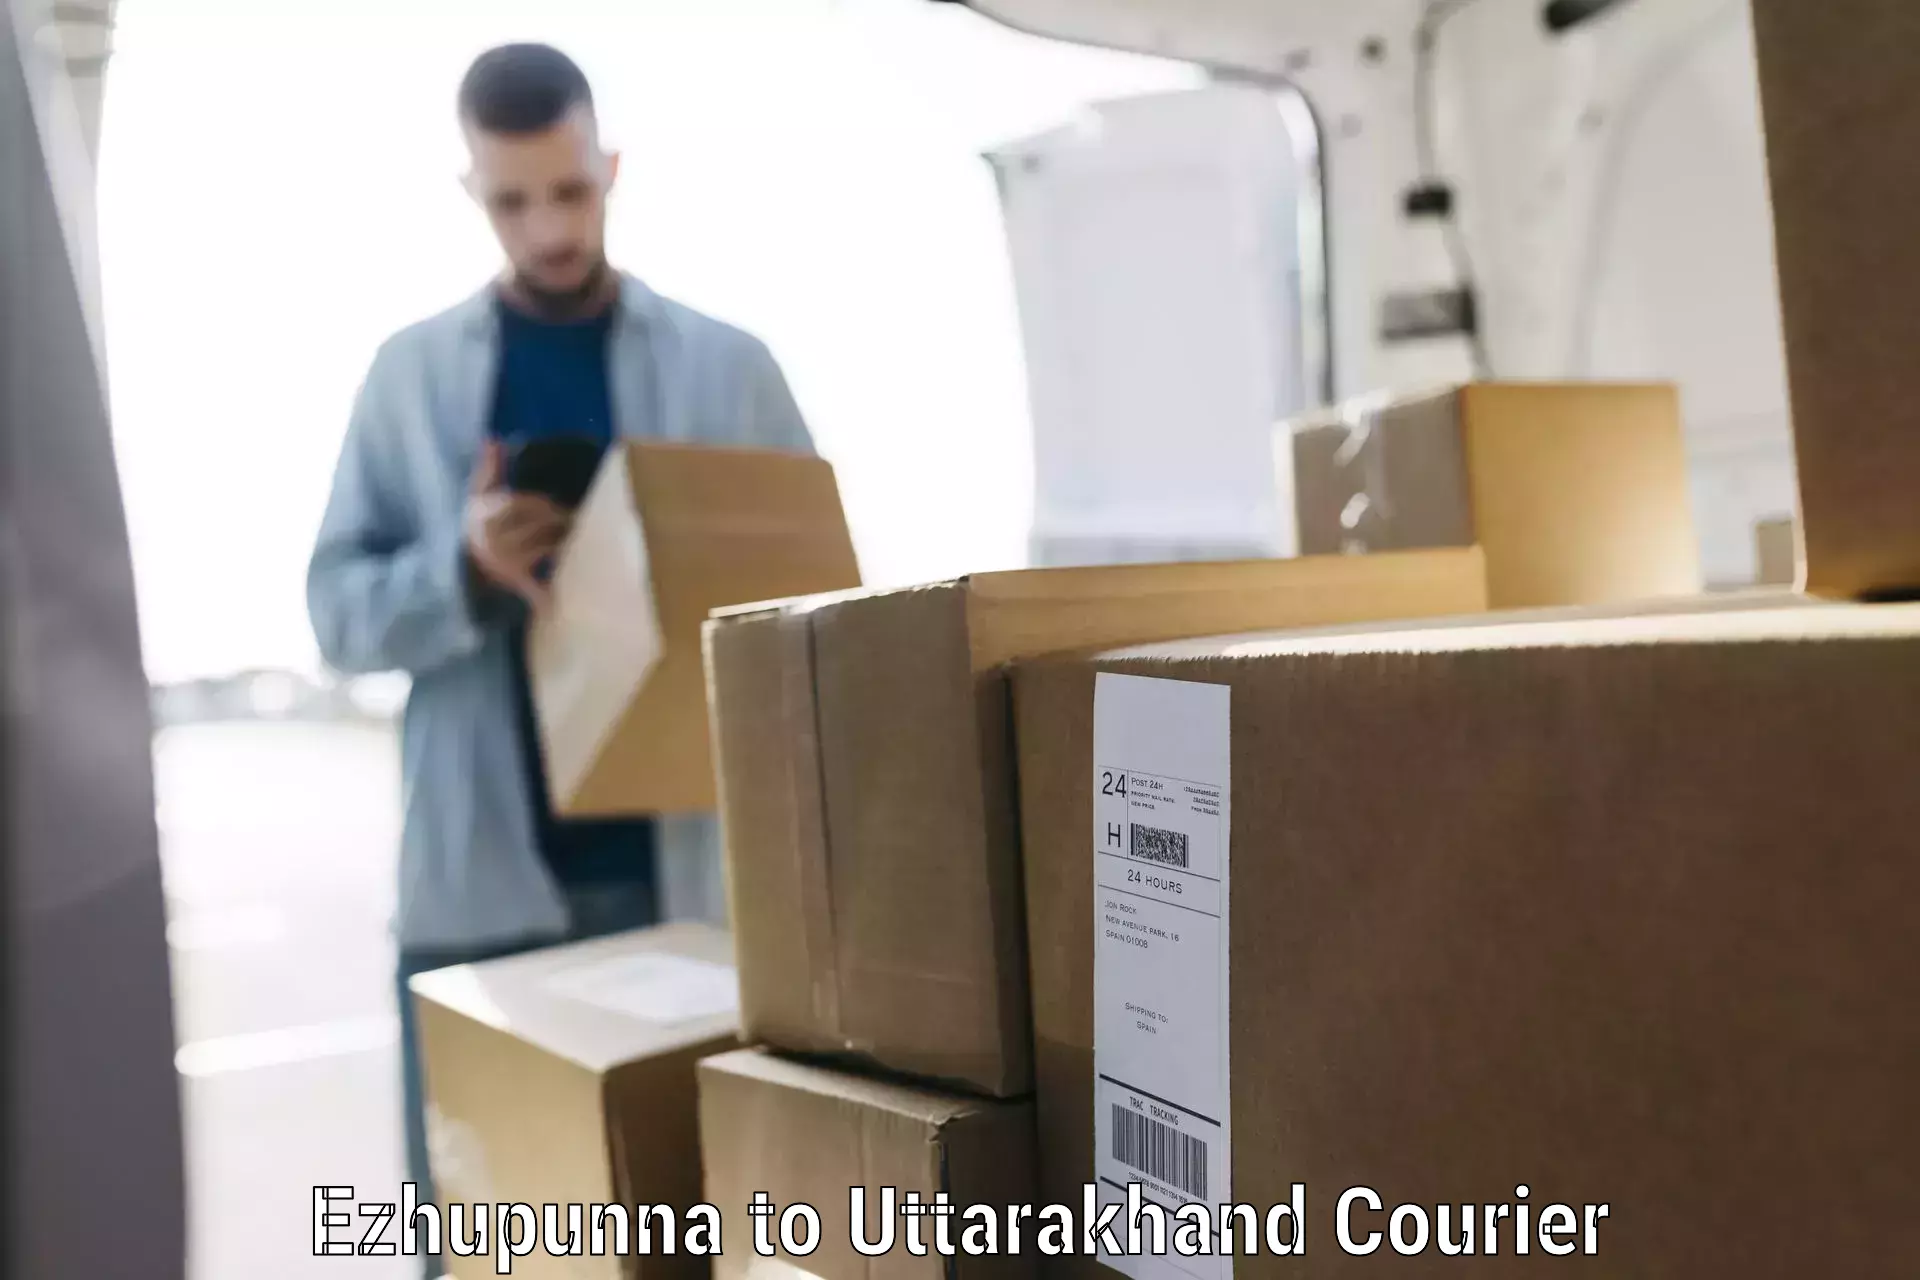 Luggage shipment processing in Ezhupunna to Uttarakhand